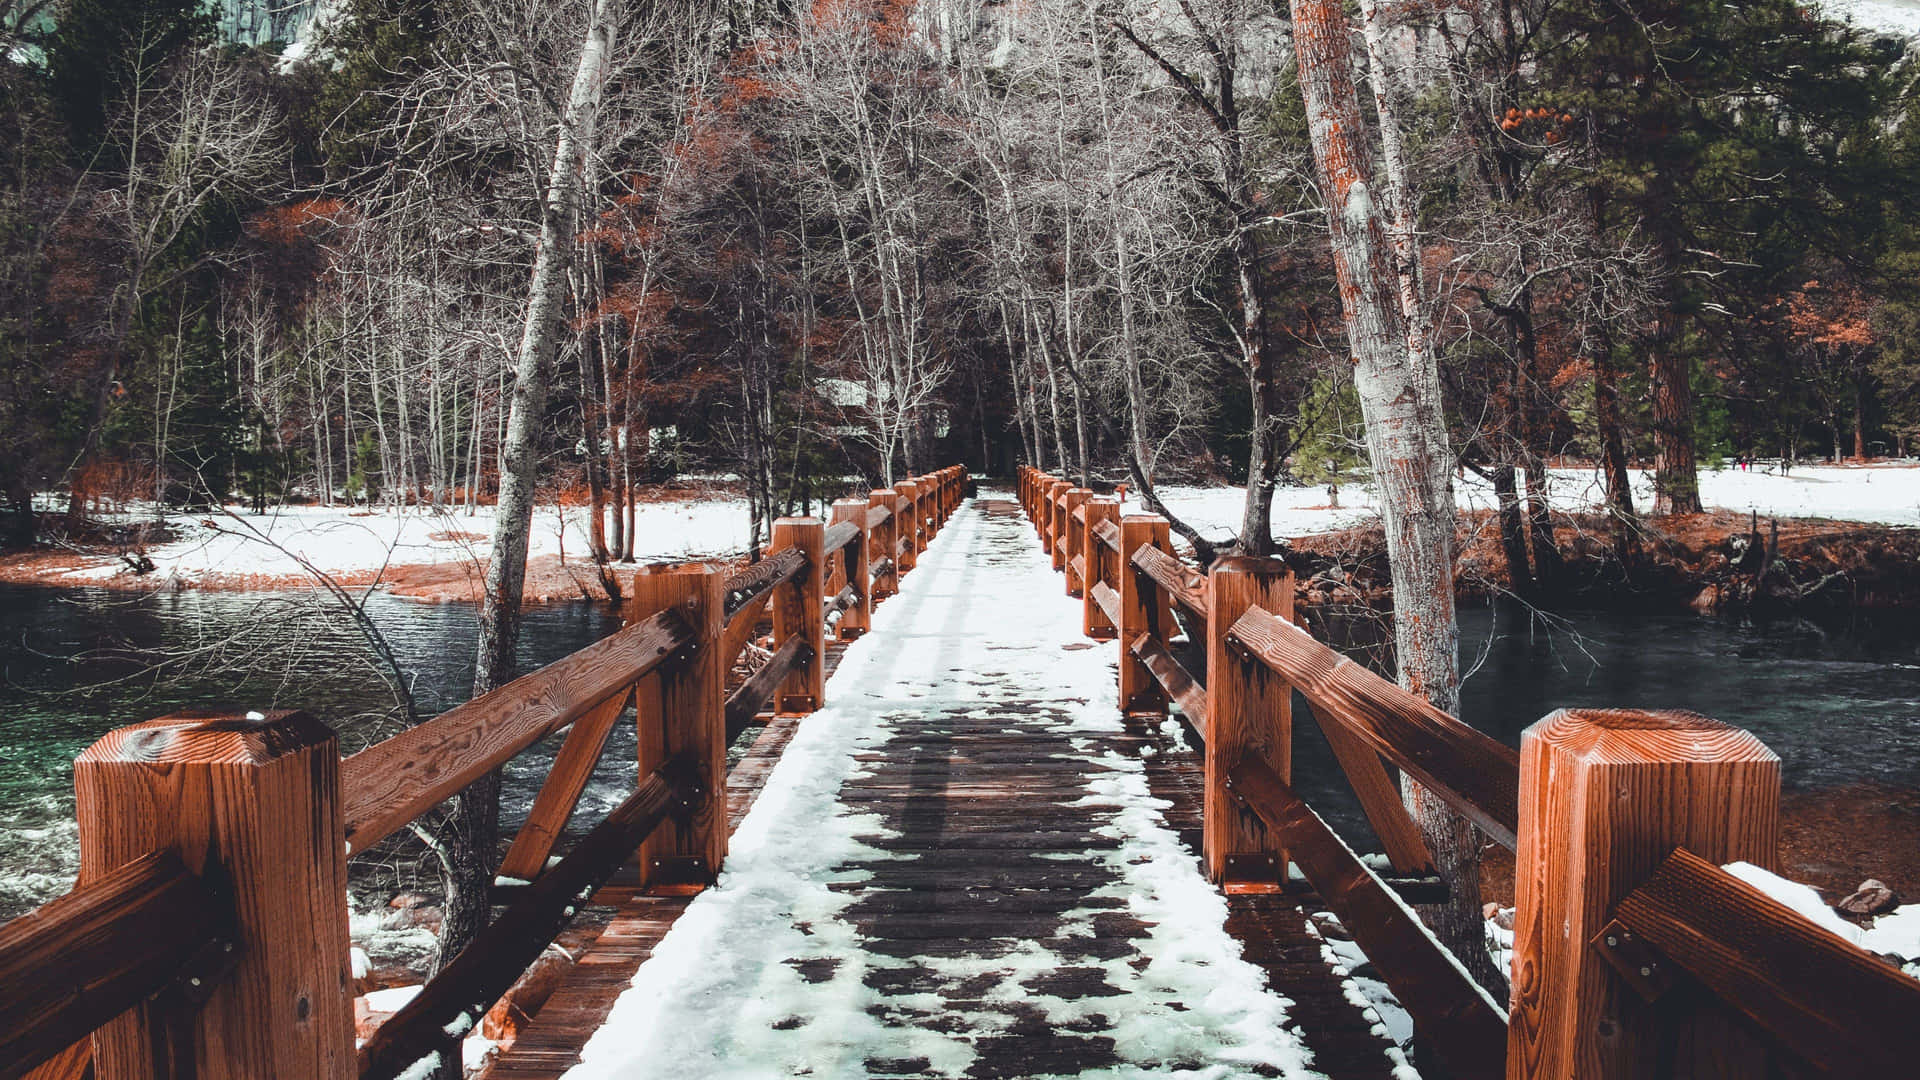 Increíblepuente De Madera En El Invierno De New Hampshire. Fondo de pantalla